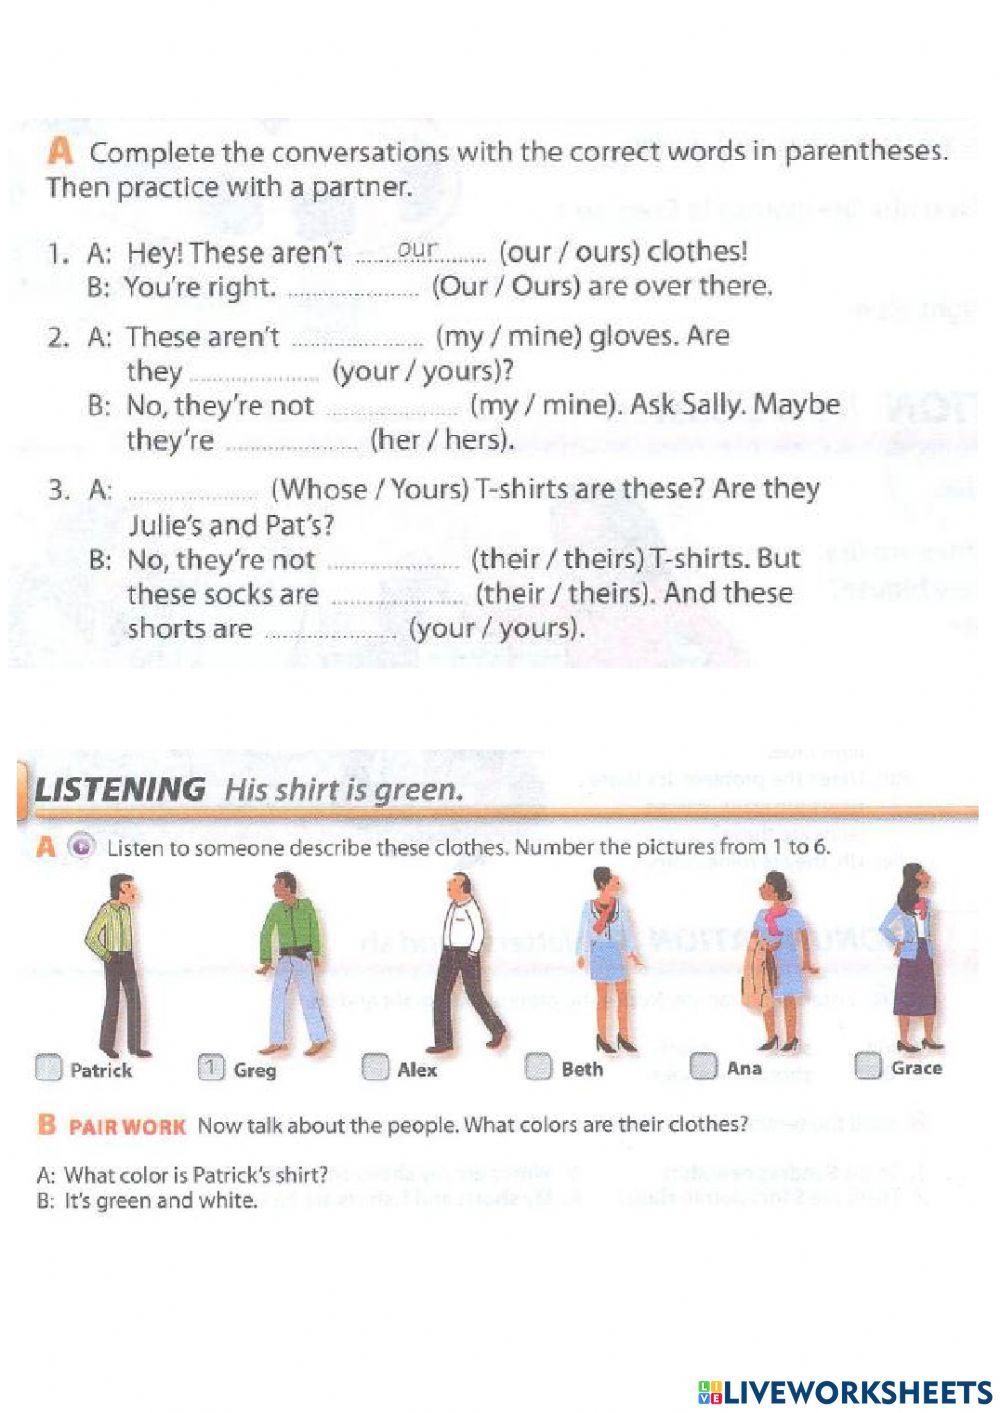 Lesson 7 - Whose, plurals, clothes, possessive 's